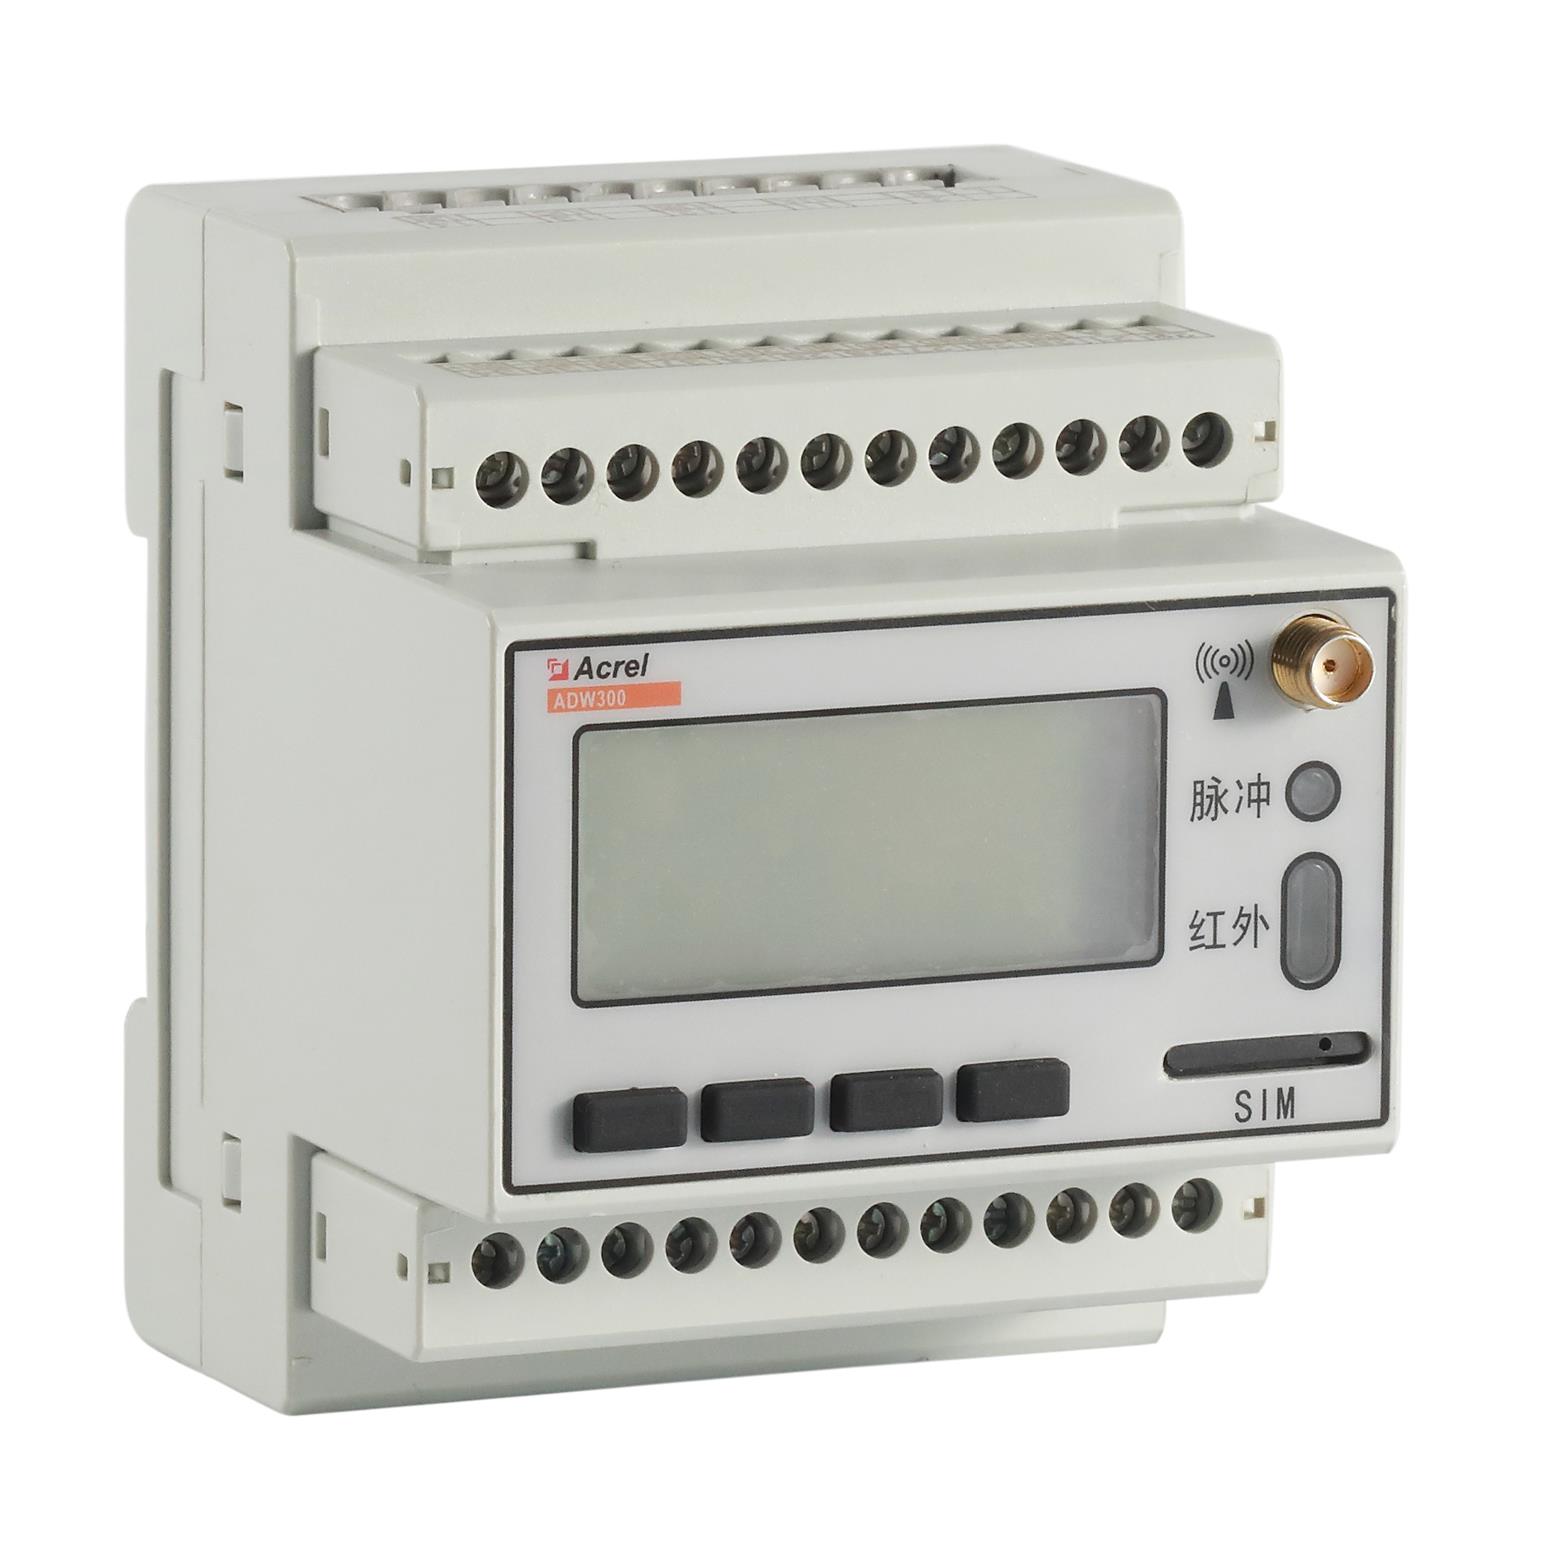 安科瑞ADW300W/LR Lora无线计量仪表标配100A互感器导轨式电表